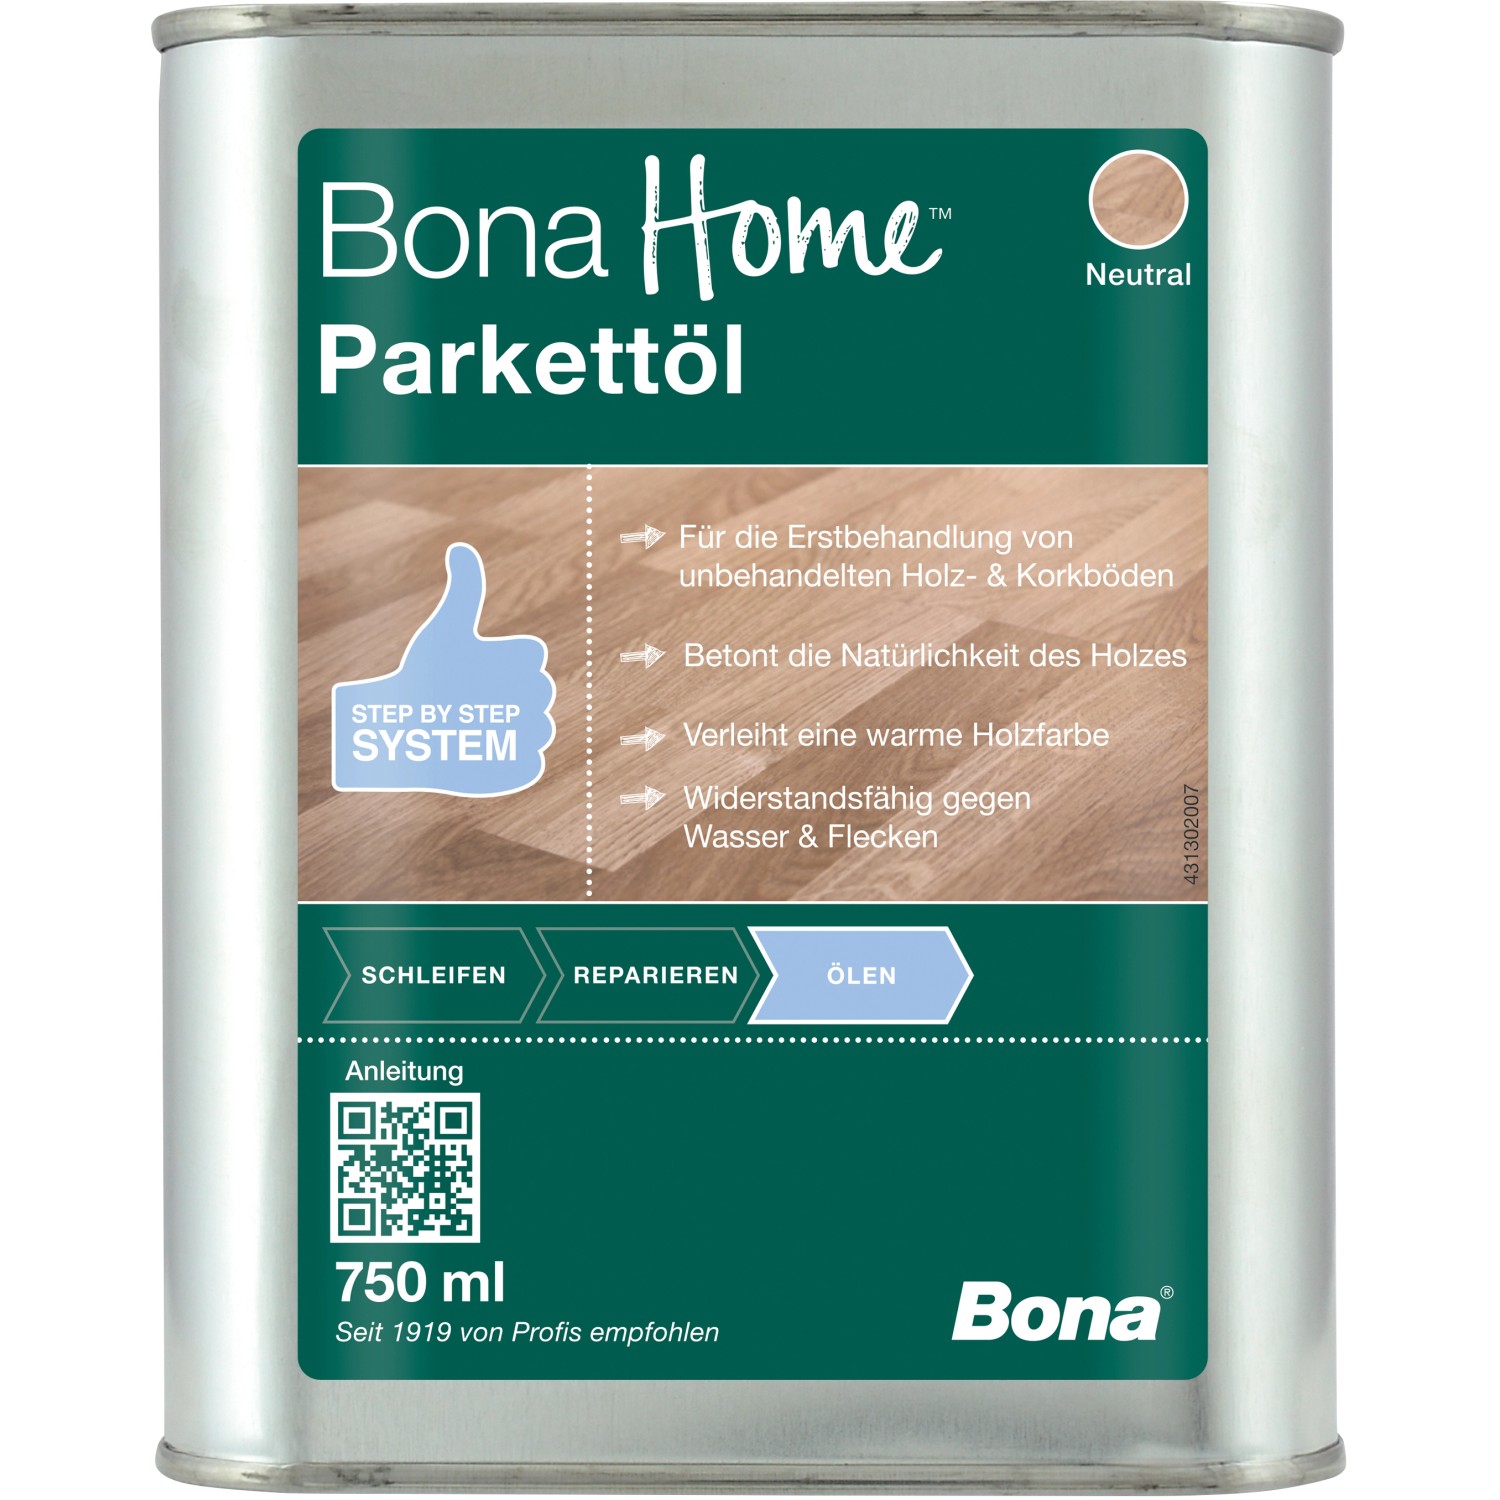 Bona Home Parkett-Öl Neutral 750 ml von Bona